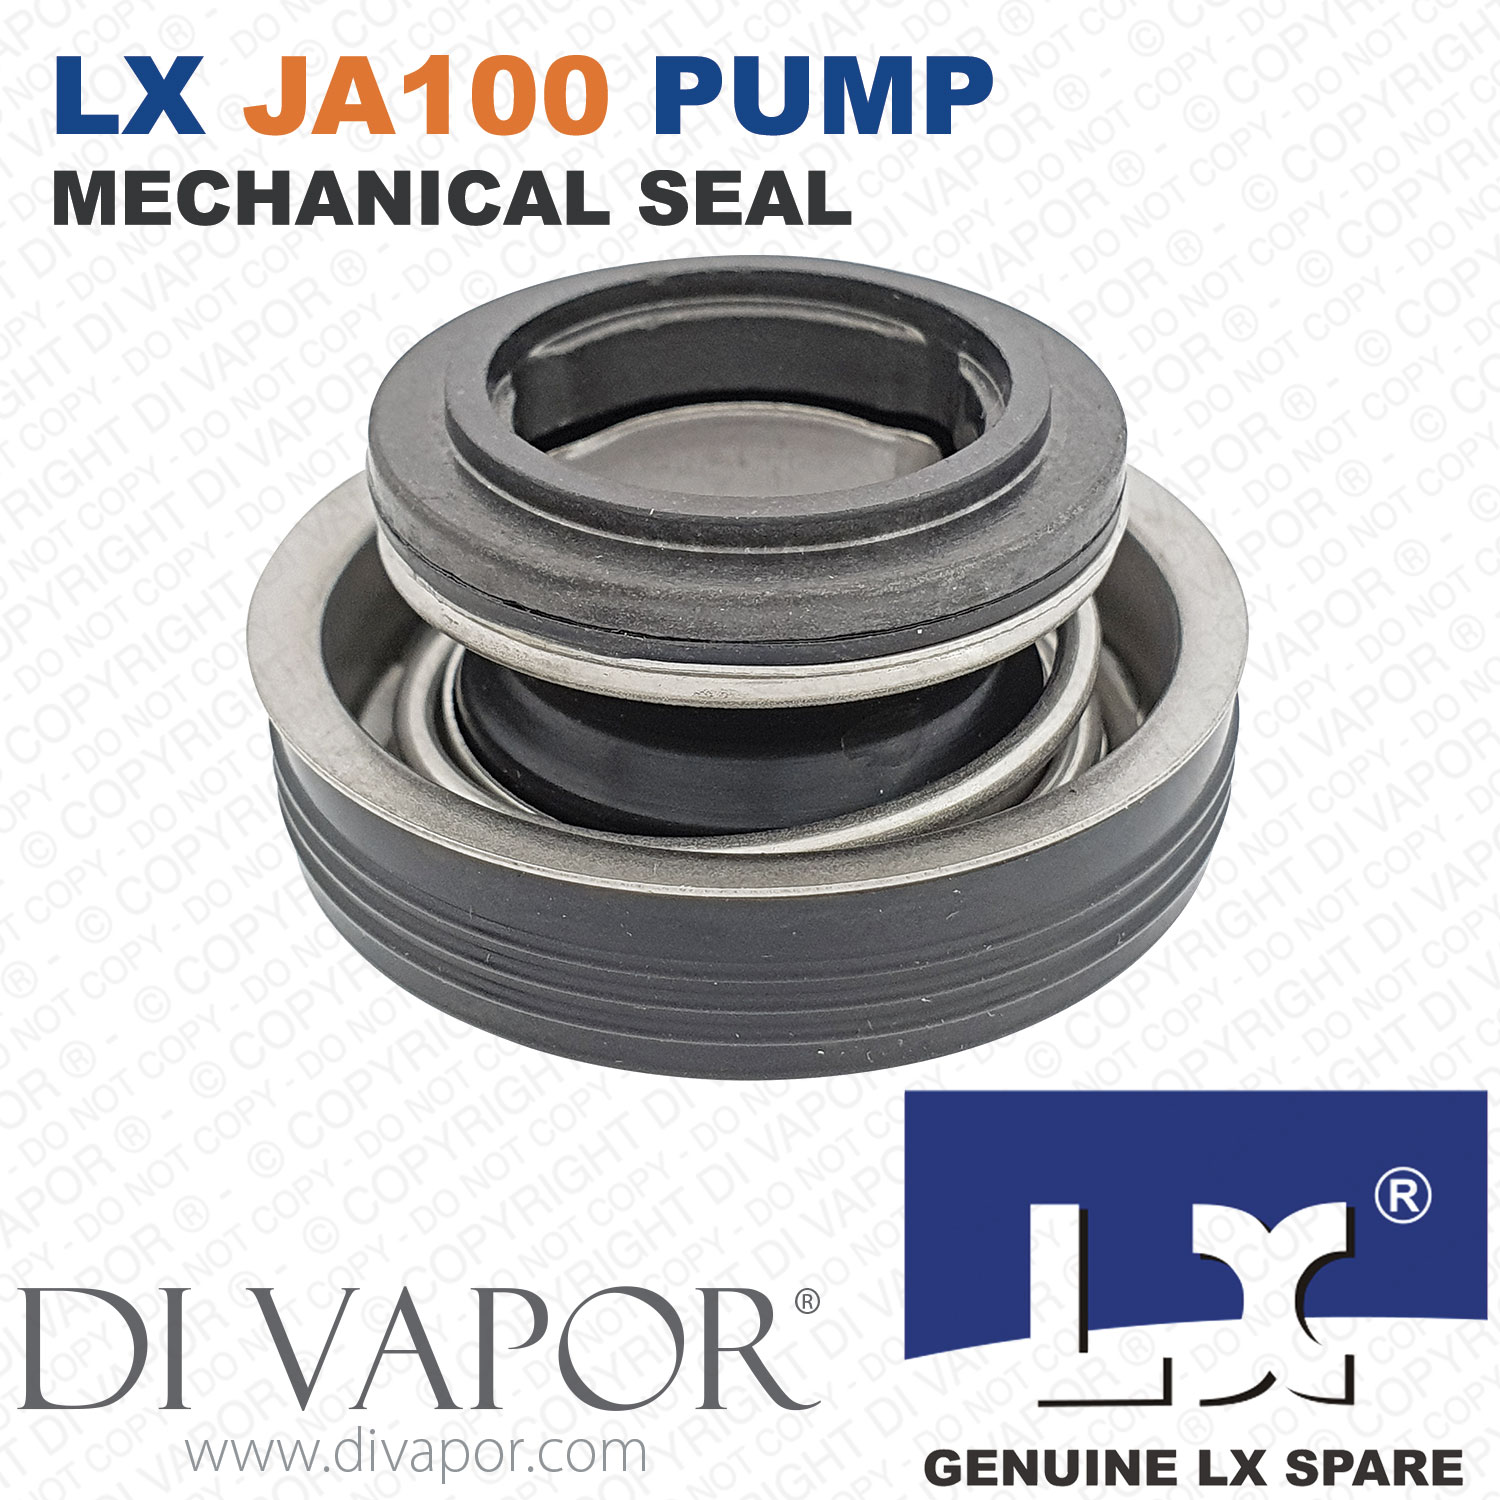 LX JA100 Pump Mechanical Seal Spare - JA100-MSS